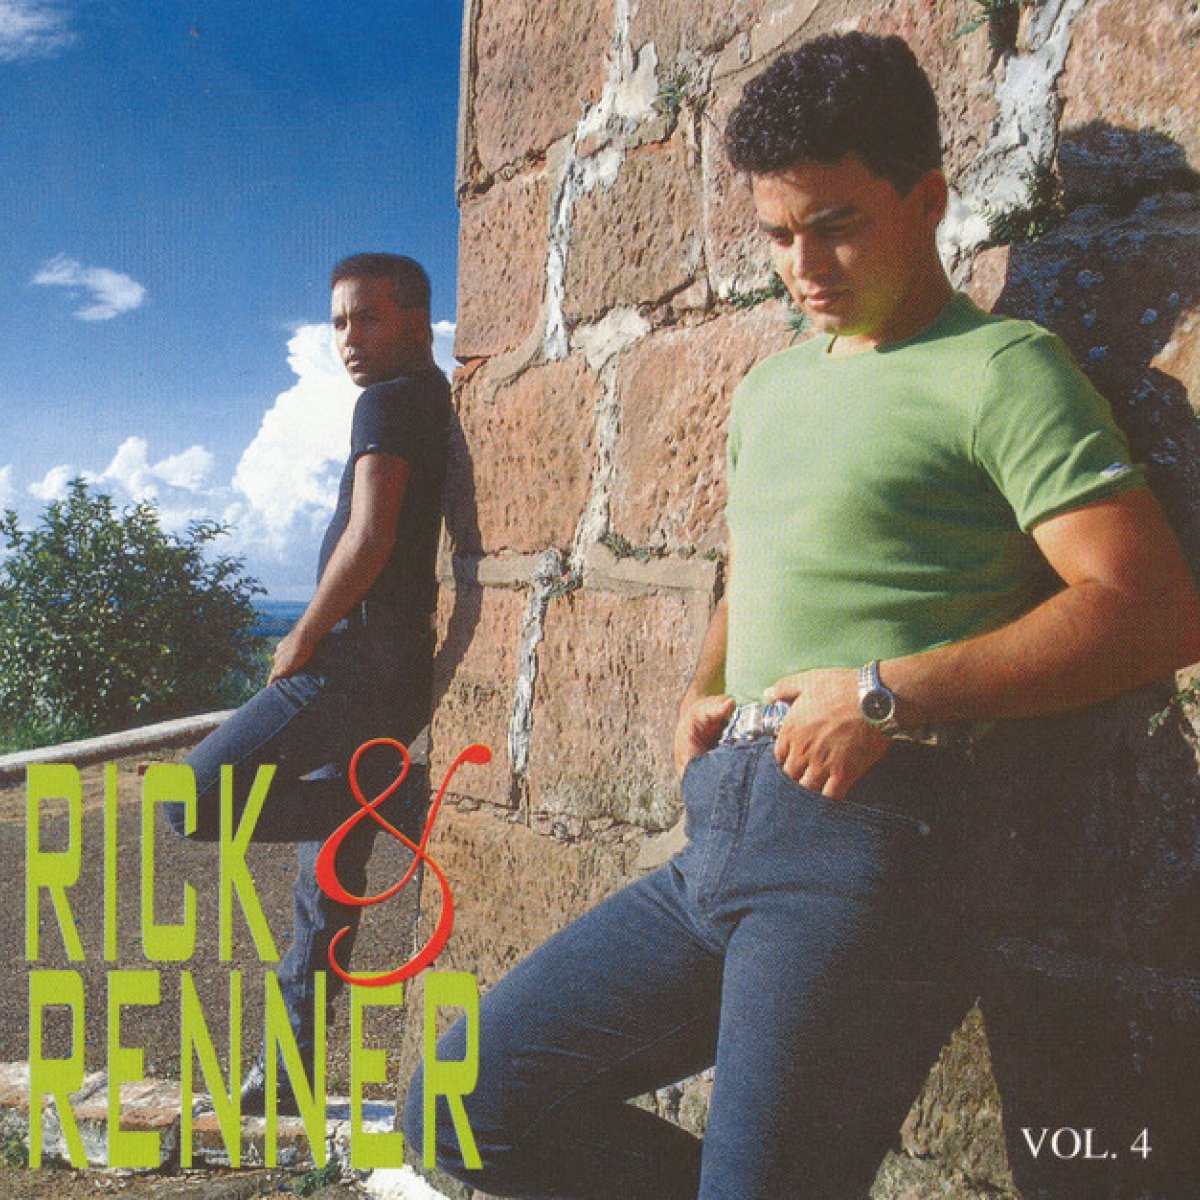 Rick e Renner - Volume 4 - Rick e Renner